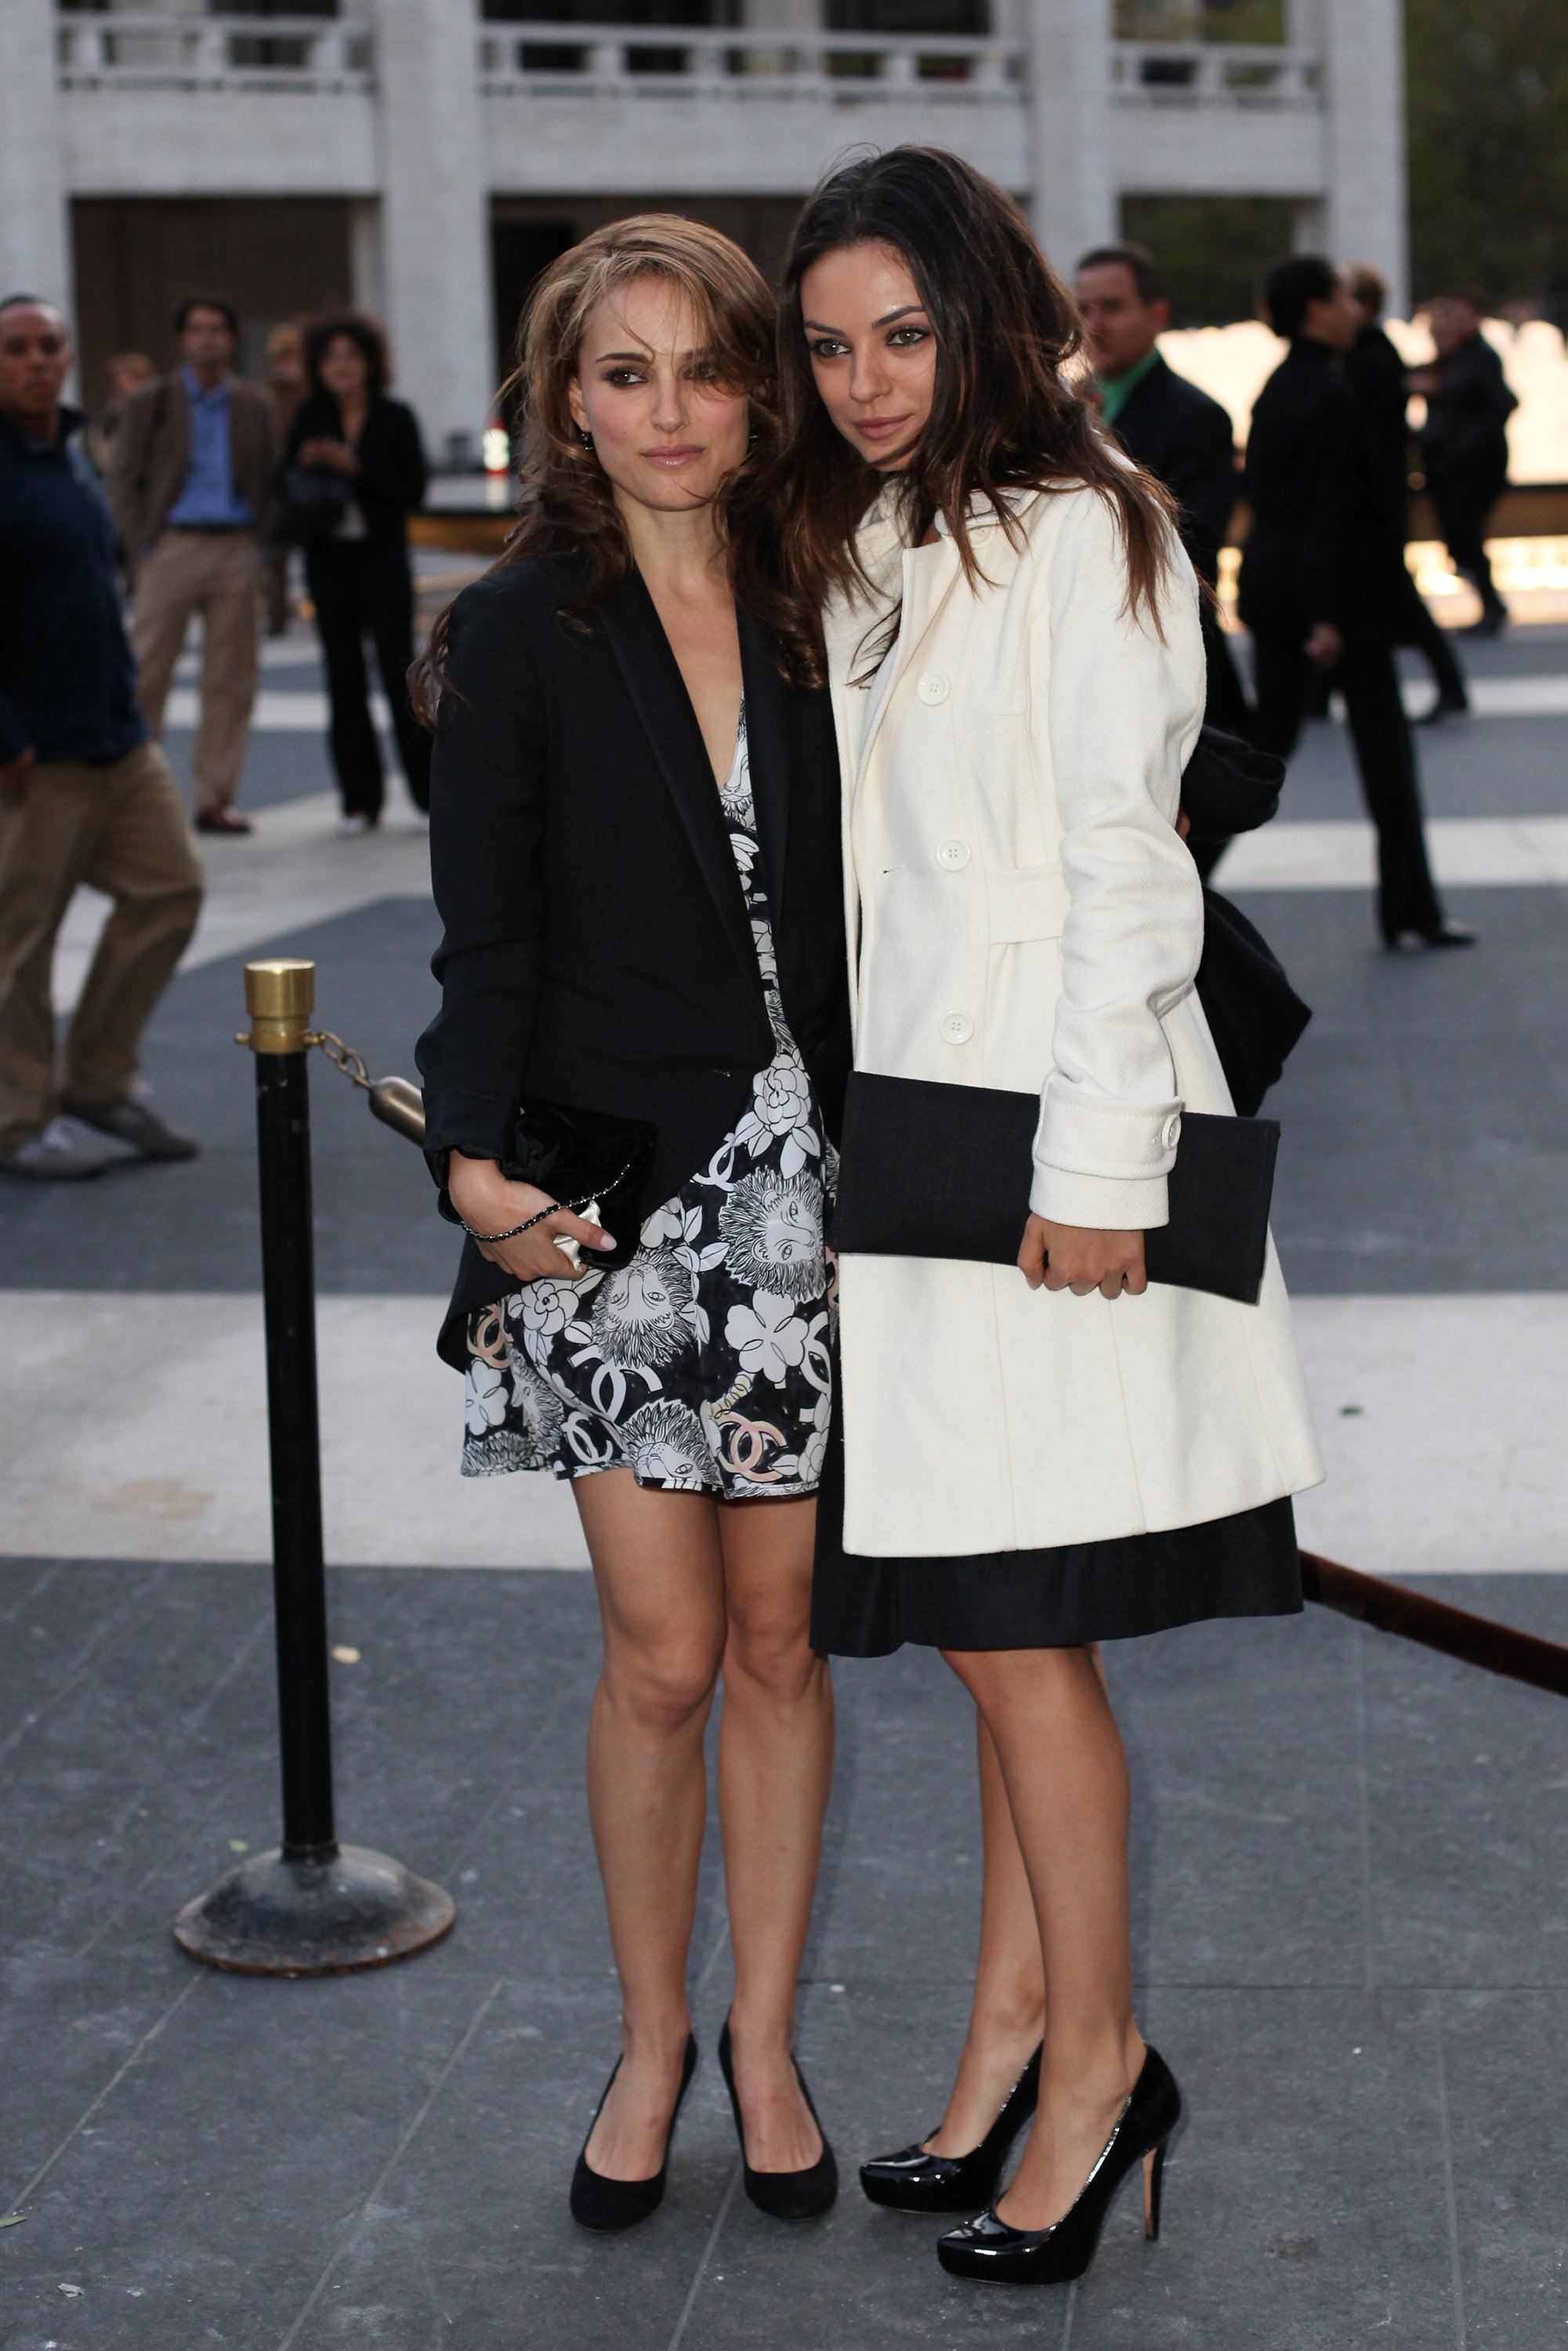 women, Mila Kunis, actress, Natalie Portman, high heels - desktop wallpaper